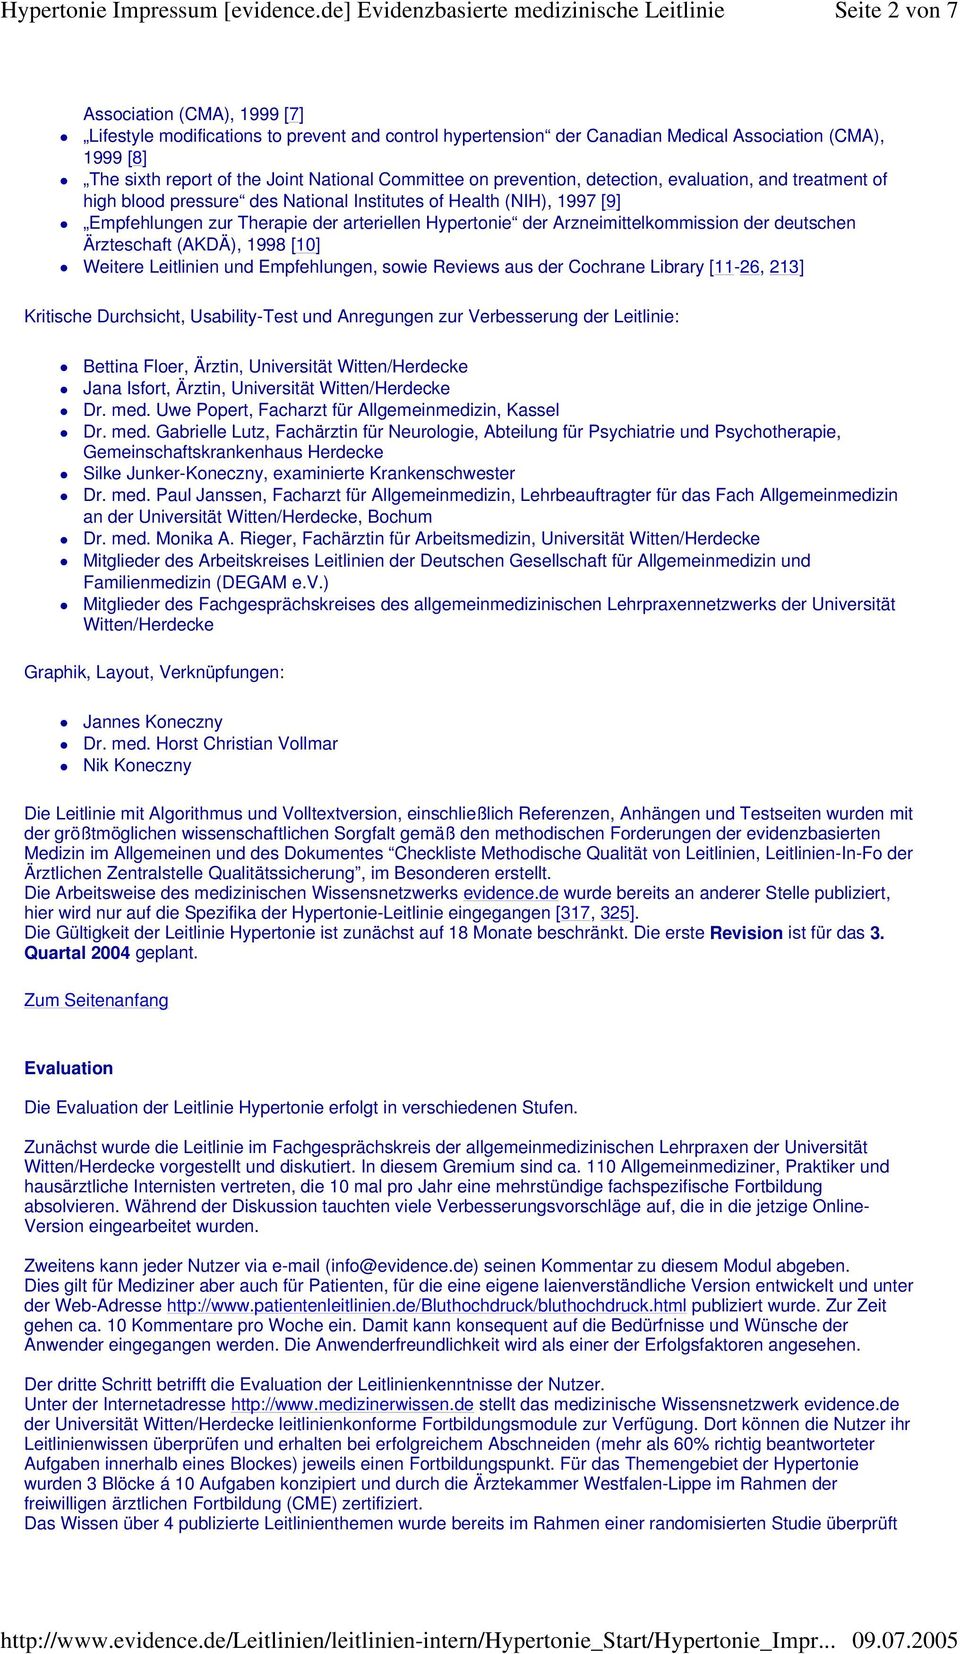 Arzneimittelkommission der deutschen Ärzteschaft (AKDÄ), 1998 [10] Weitere Leitlinien und Empfehlungen, sowie Reviews aus der Cochrane Library [11-26, 213] Kritische Durchsicht, Usability-Test und